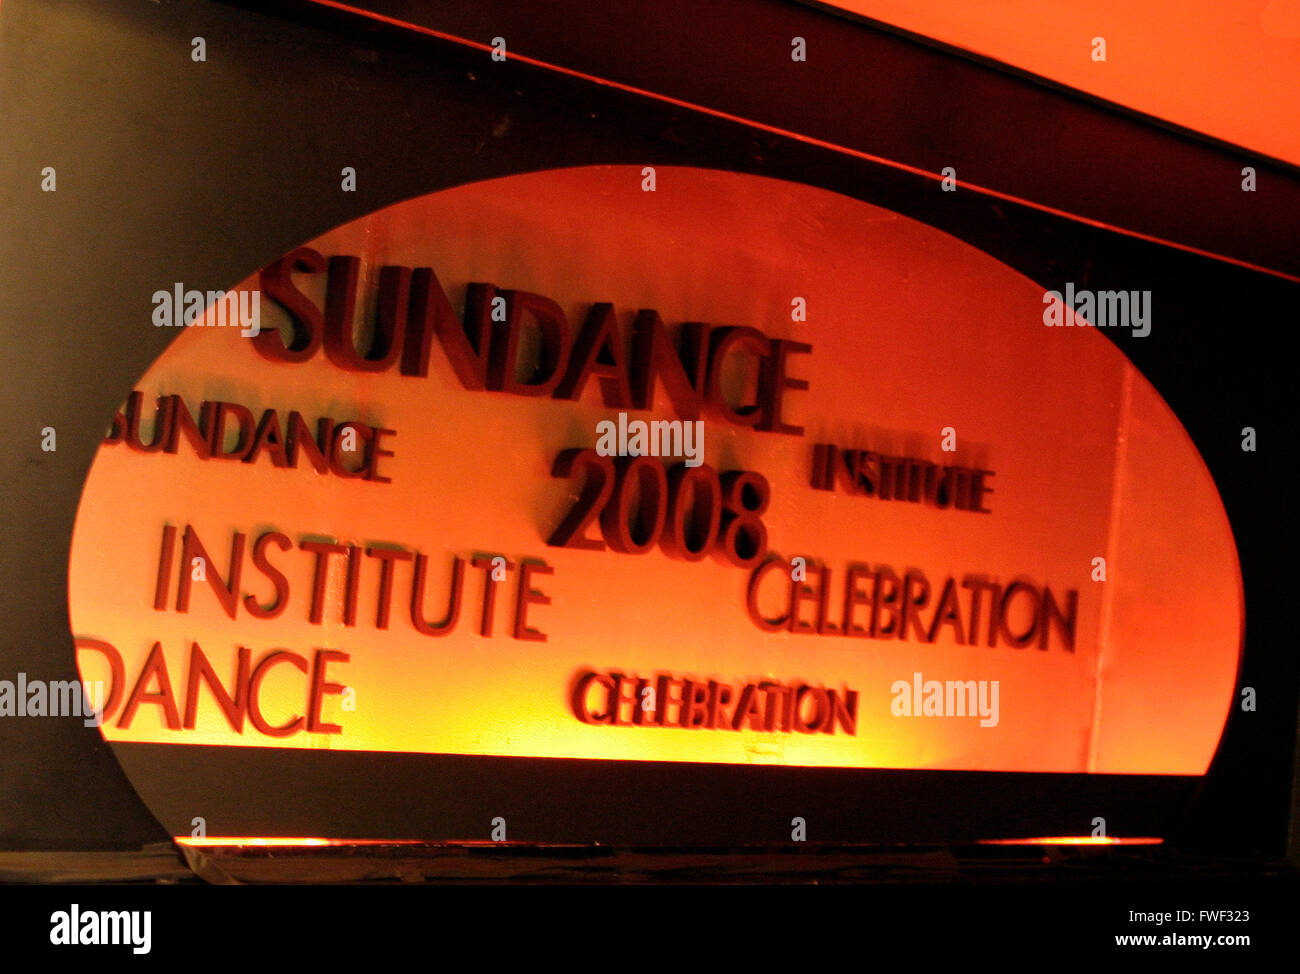 El Instituto Sundance 2008 Celebración Anual de Recaudación de Fondos celebrado en el Roseland Ballroom en Nueva York, el 27 de octubre de 2008. Auspiciada por el presidente y fundador del Instituto Sundance de Robert Redford. Foto de stock